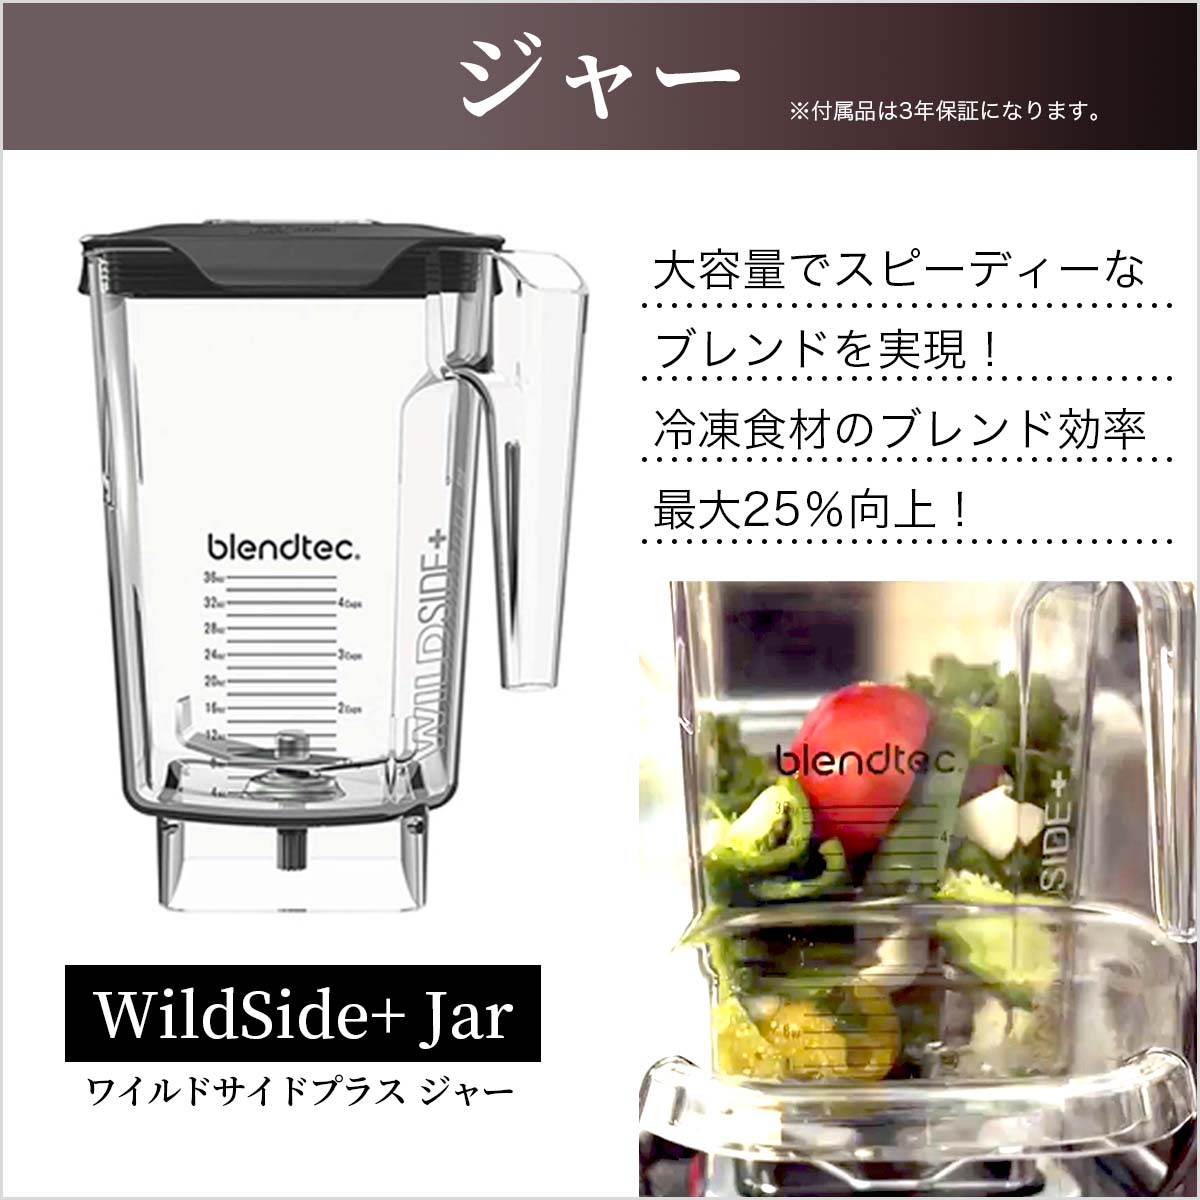 【要問い合わせ 銀行振込限定価格】Designer725 デザイナー725 ジャー2個付属【WildeSide+ Jar + Twister Jar】